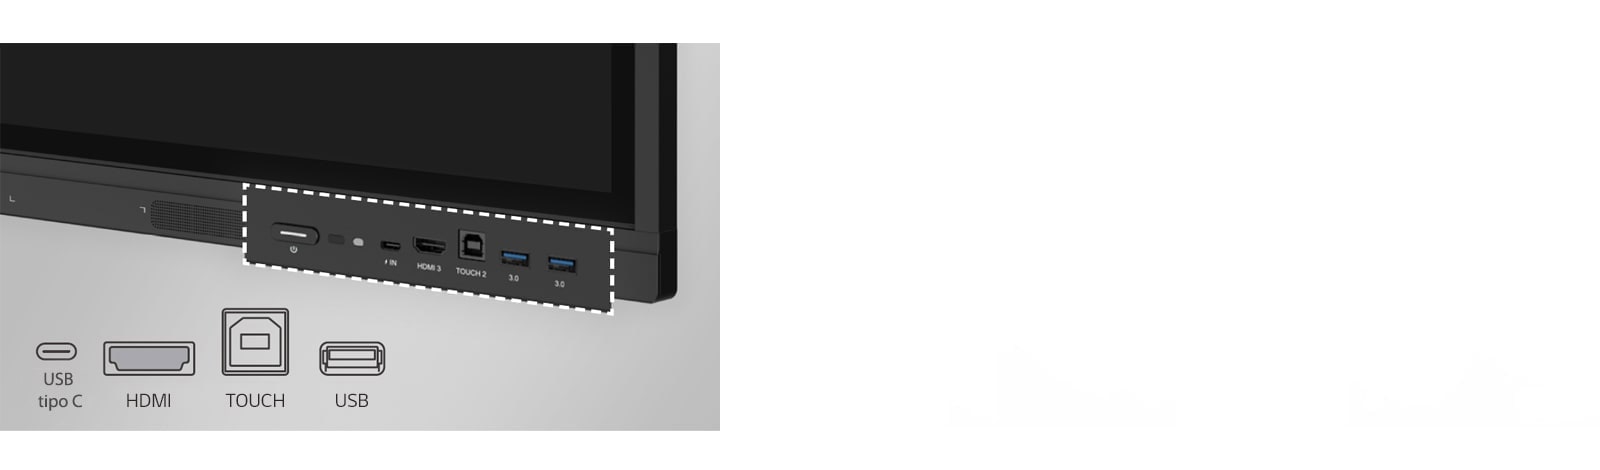 O LG CreateBoard possui portas na parte frontal, como USB e HDMI.